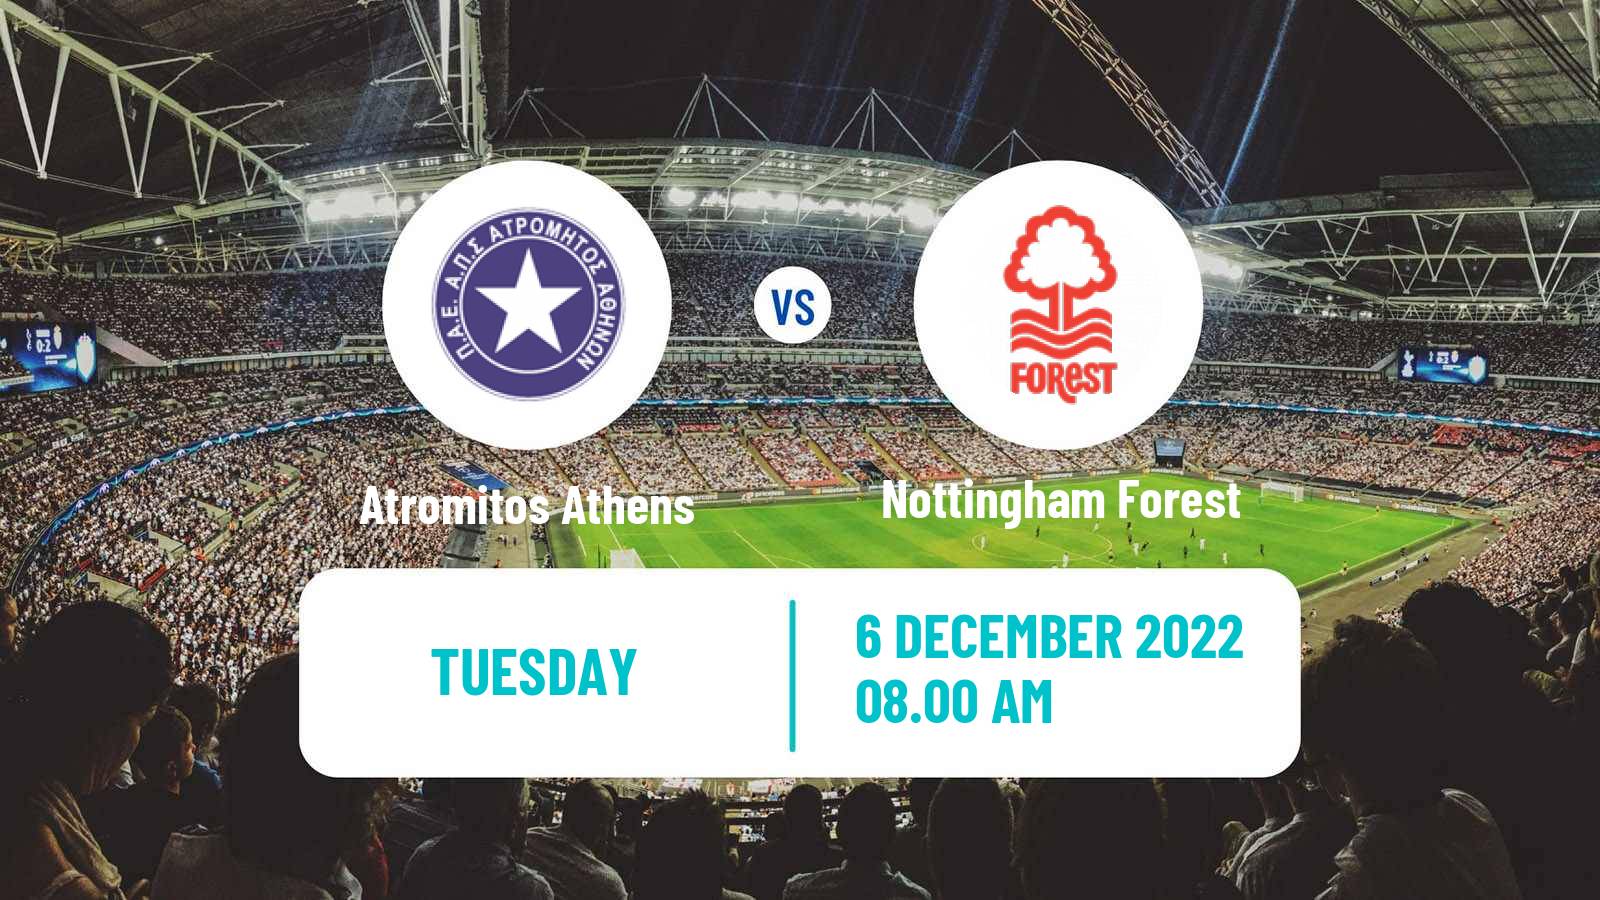 Soccer Club Friendly Atromitos Athens - Nottingham Forest